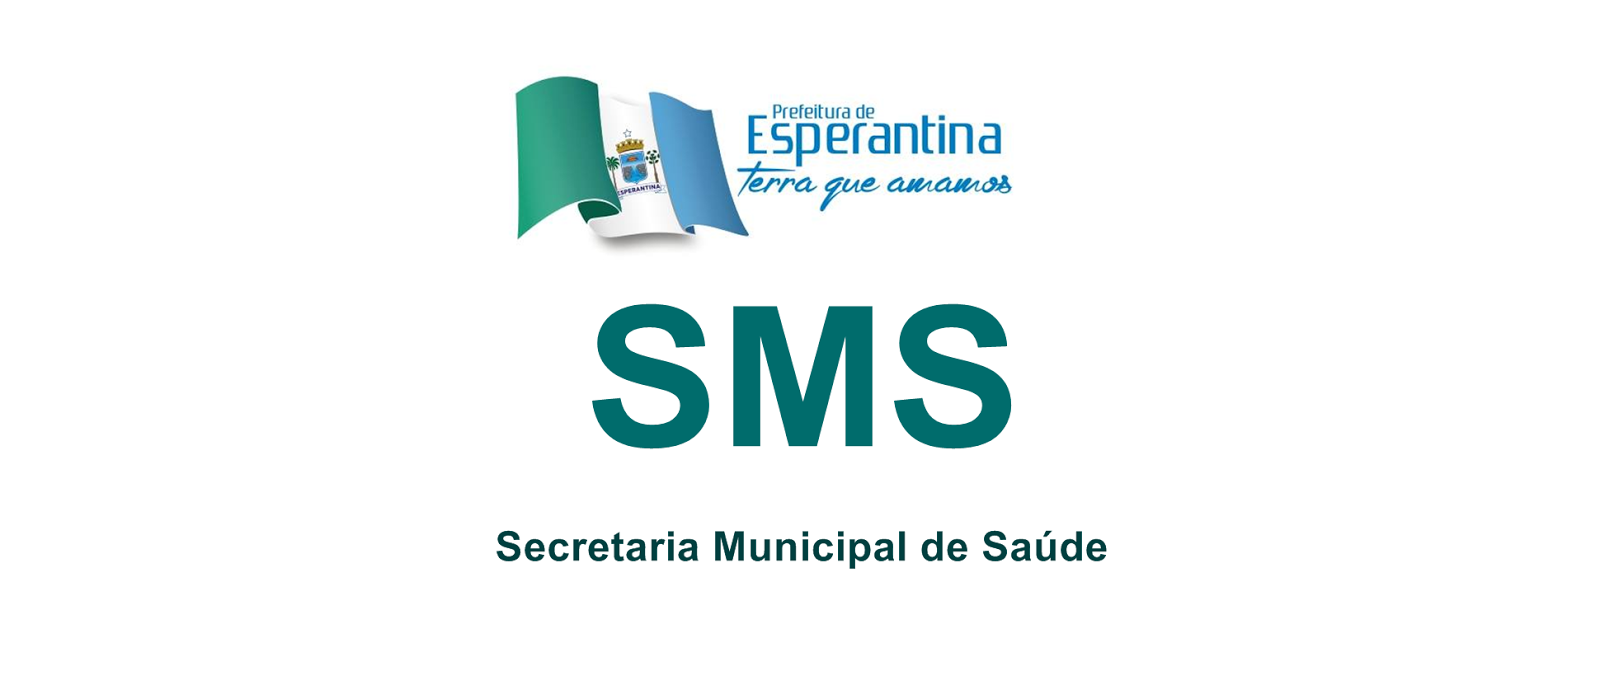 SMS - Esperantina / PI